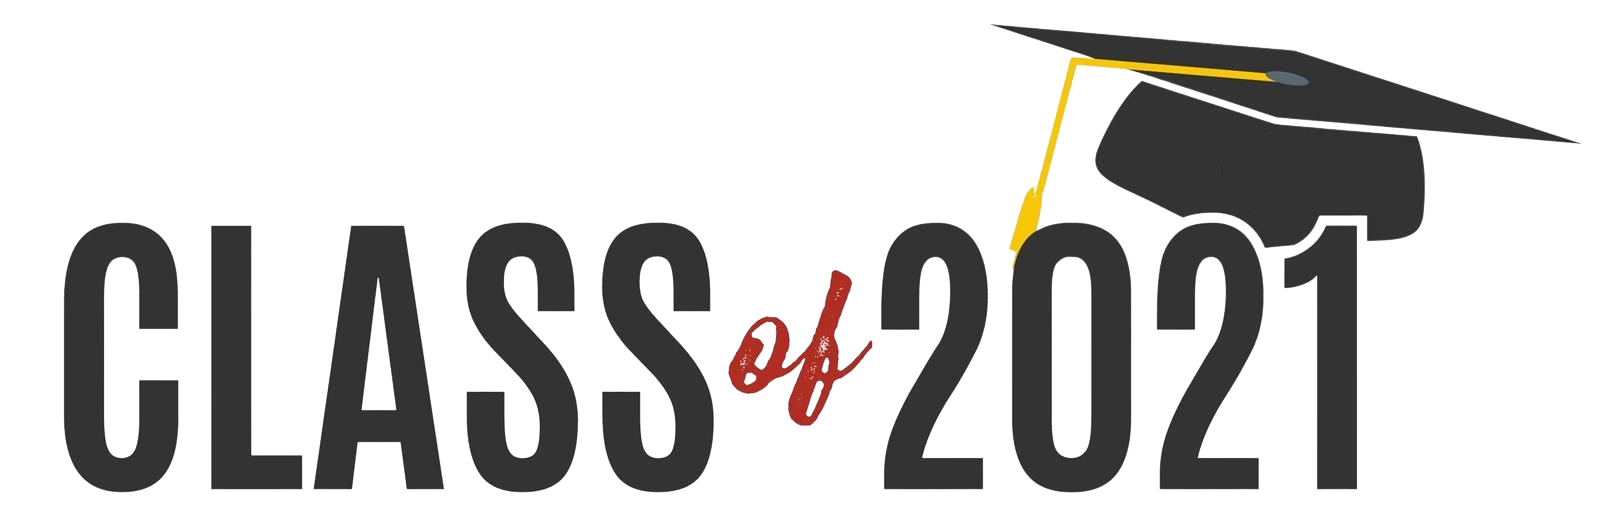 Class of 2021 Logo